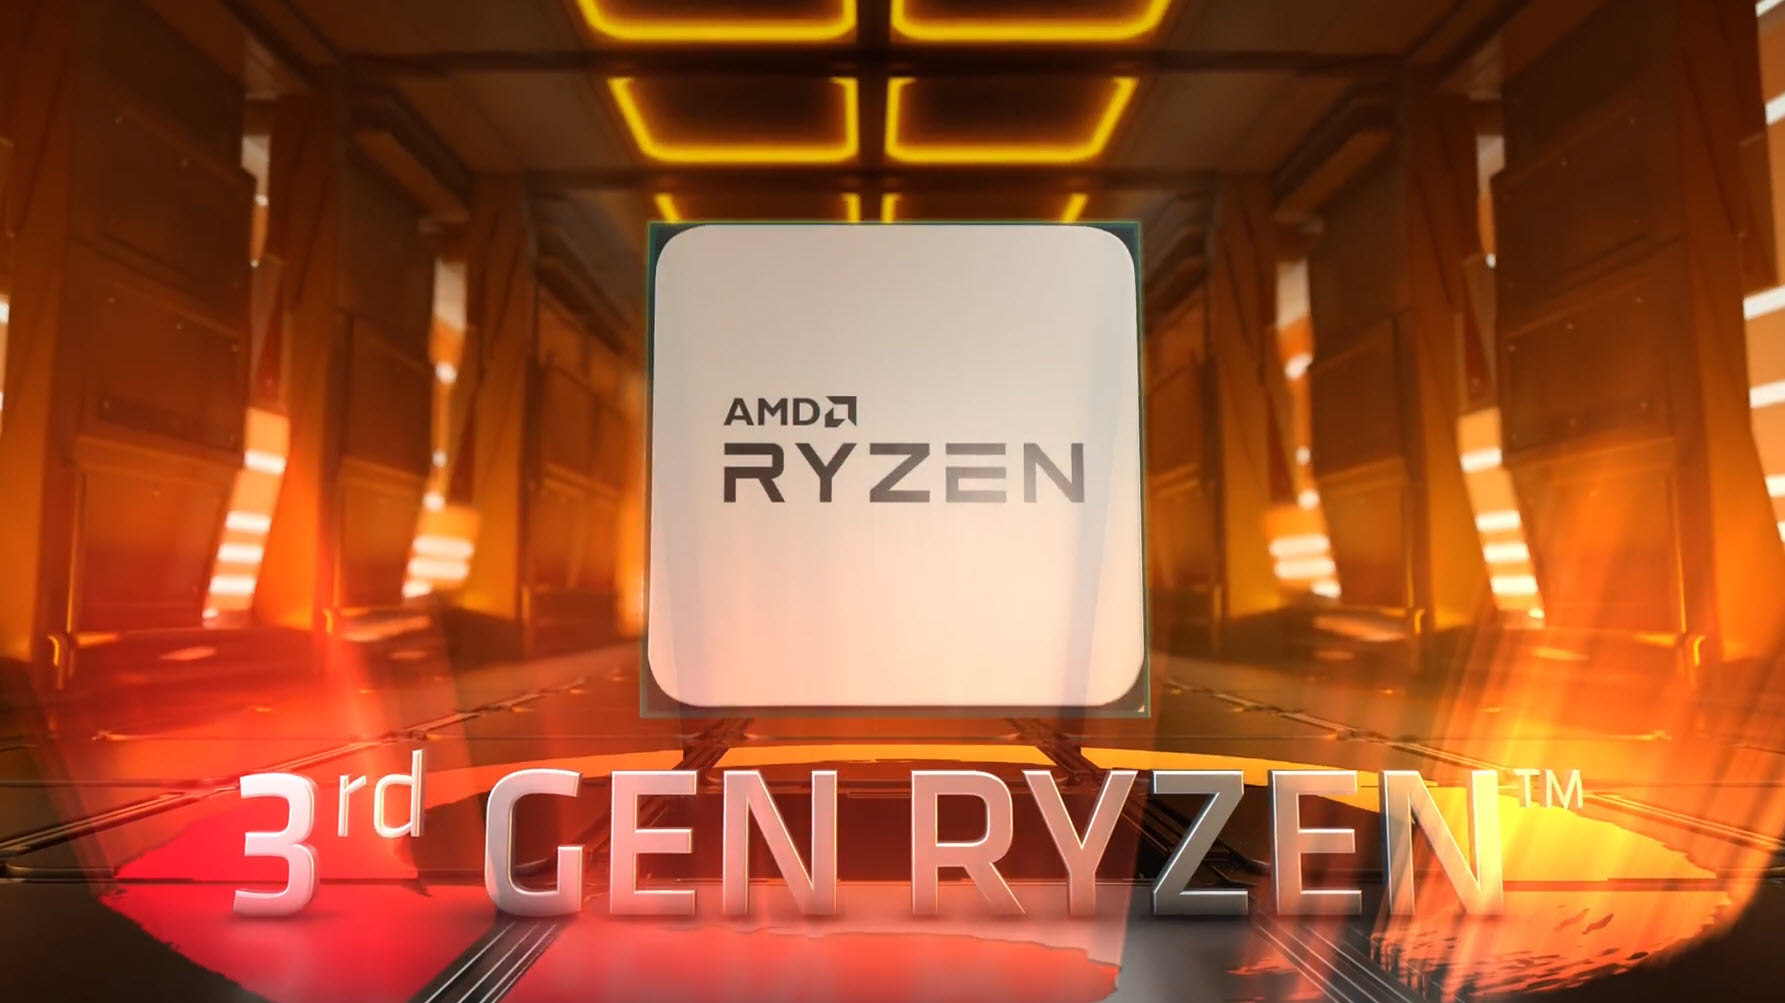 2019 07 09 10 52 34 AMD เปิดตัวแพลตฟอร์มพีซีเกมมิ่งด้วยกราฟิกการ์ด AMD Radeon™ RX 5700 Series และชิปประมวลผล AMD Ryzen™ 3000 Series พร้อมวางจำหน่ายแล้วทั่วโลก